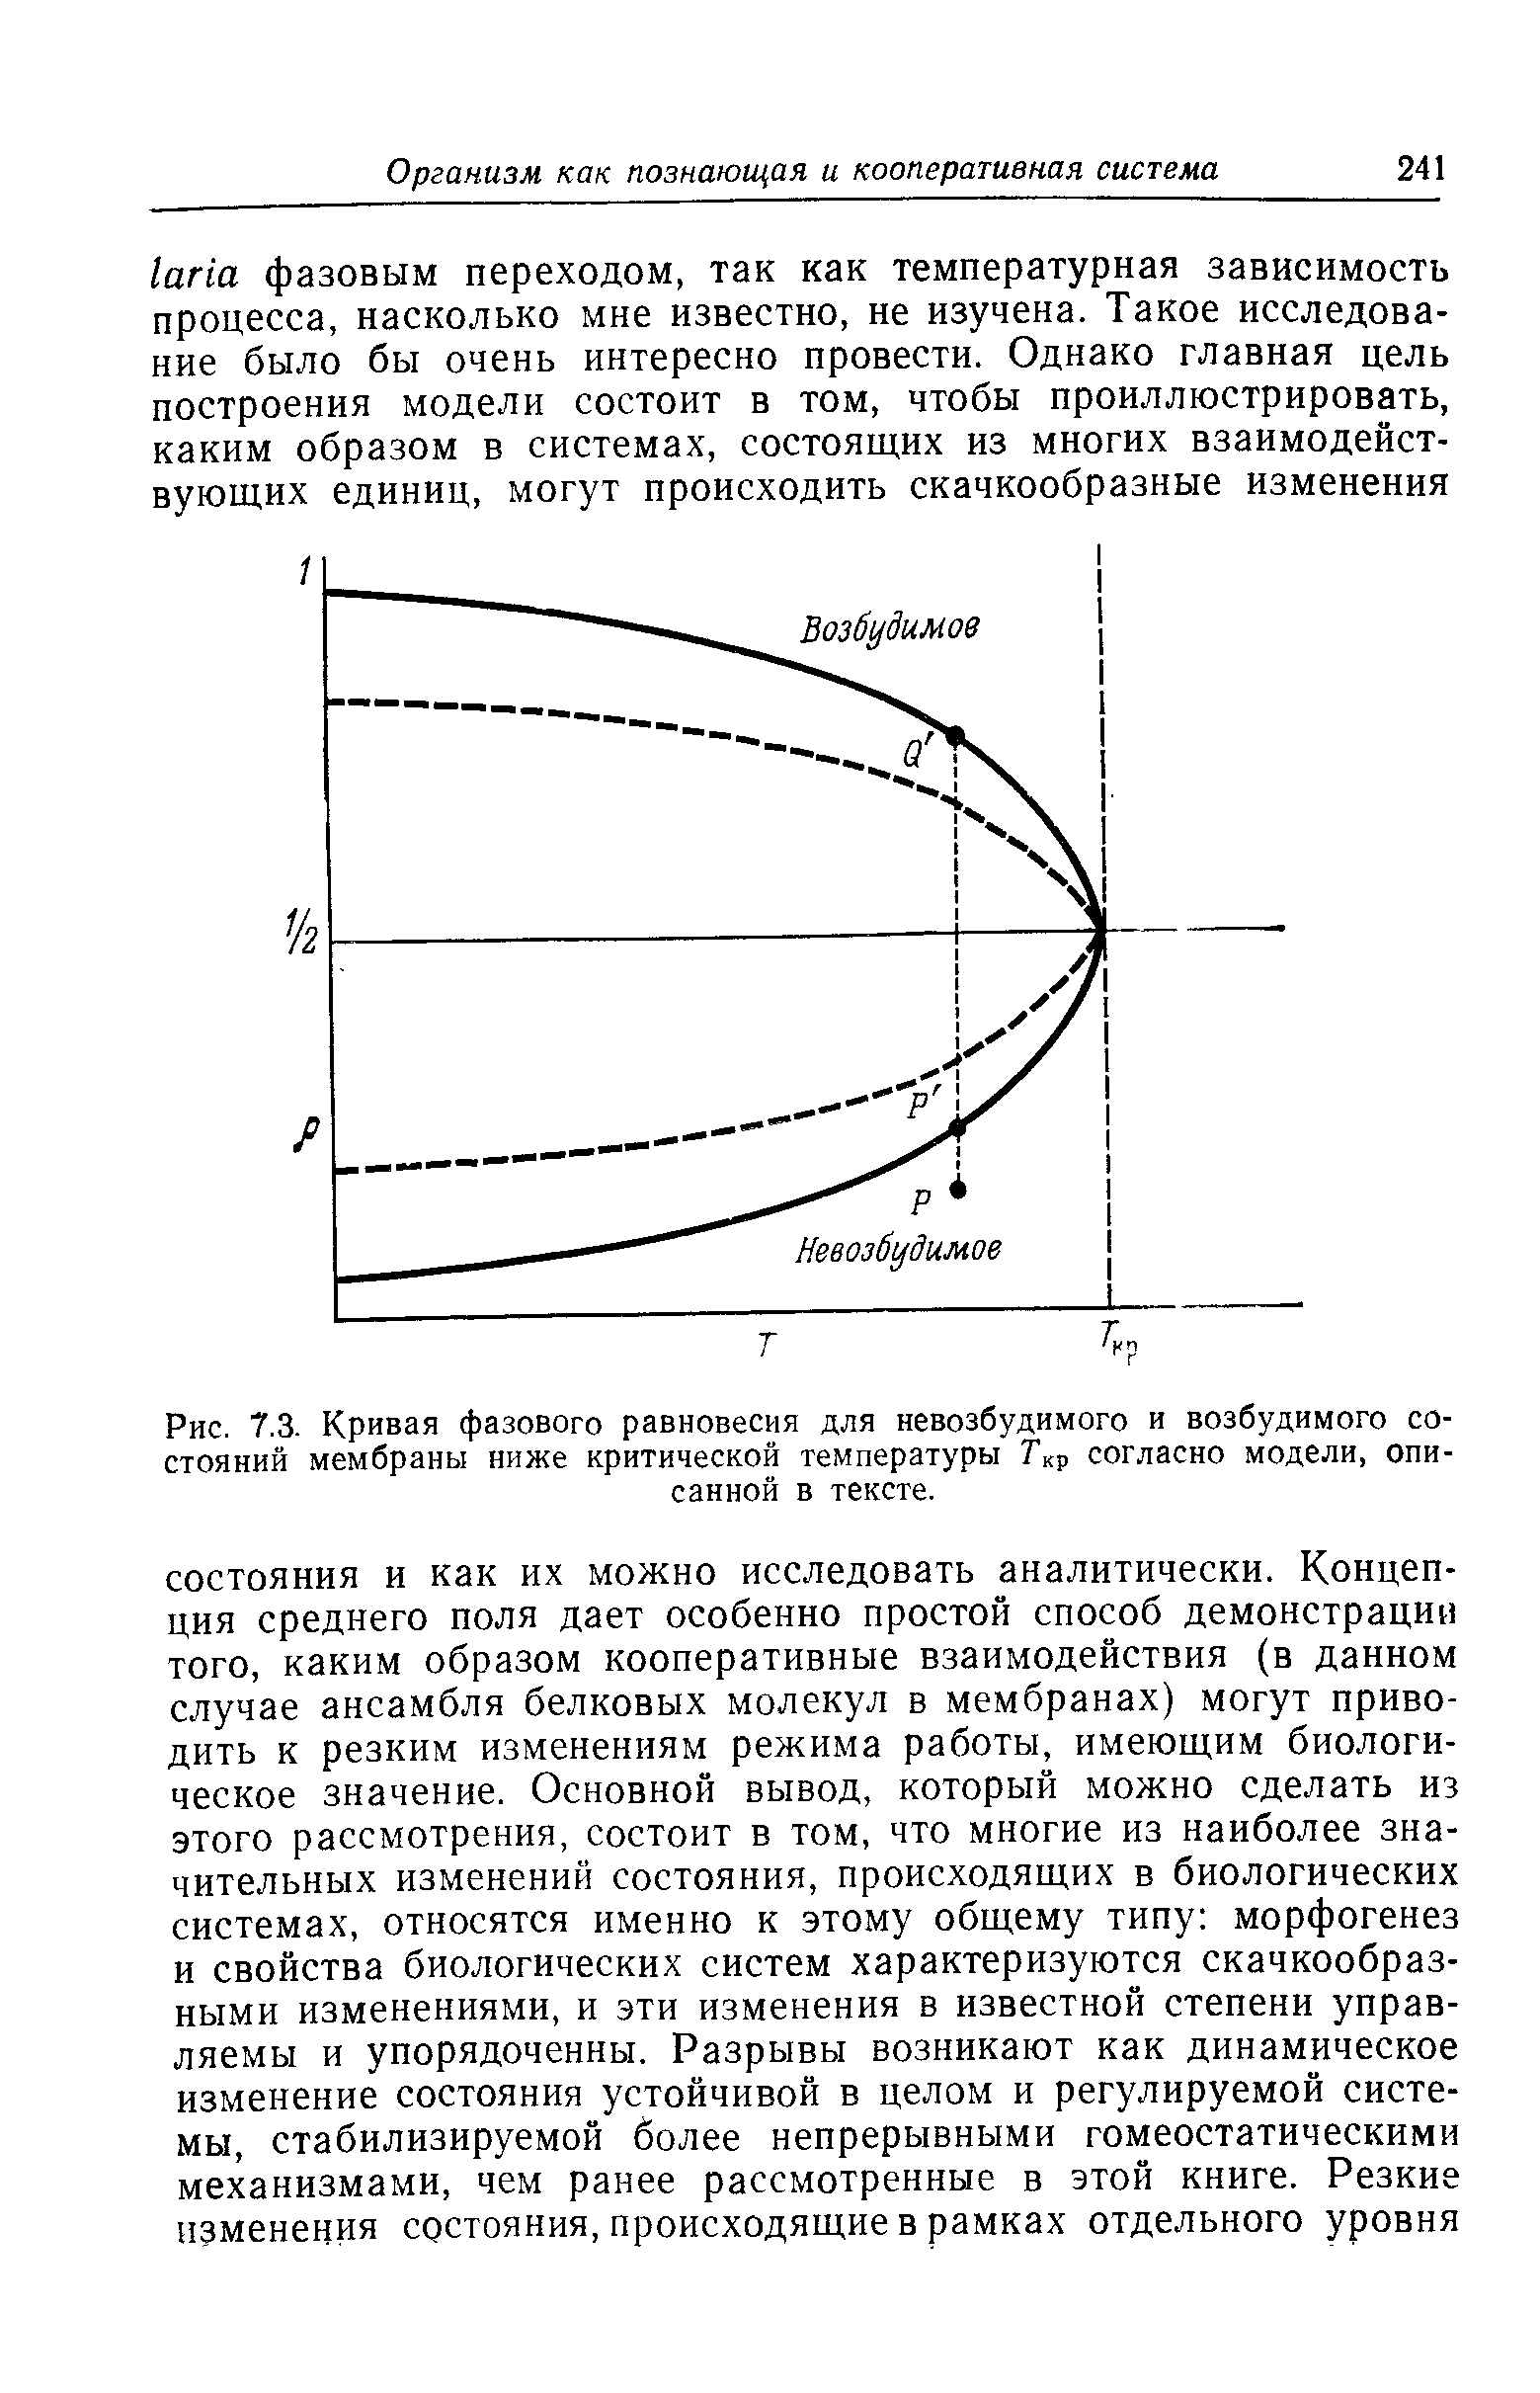 Рис. 7.3. Кривая фазового равновесия для невозбудимого и возбудимого состояний мембраны ниже критической температуры согласно модели, описанной в тексте.